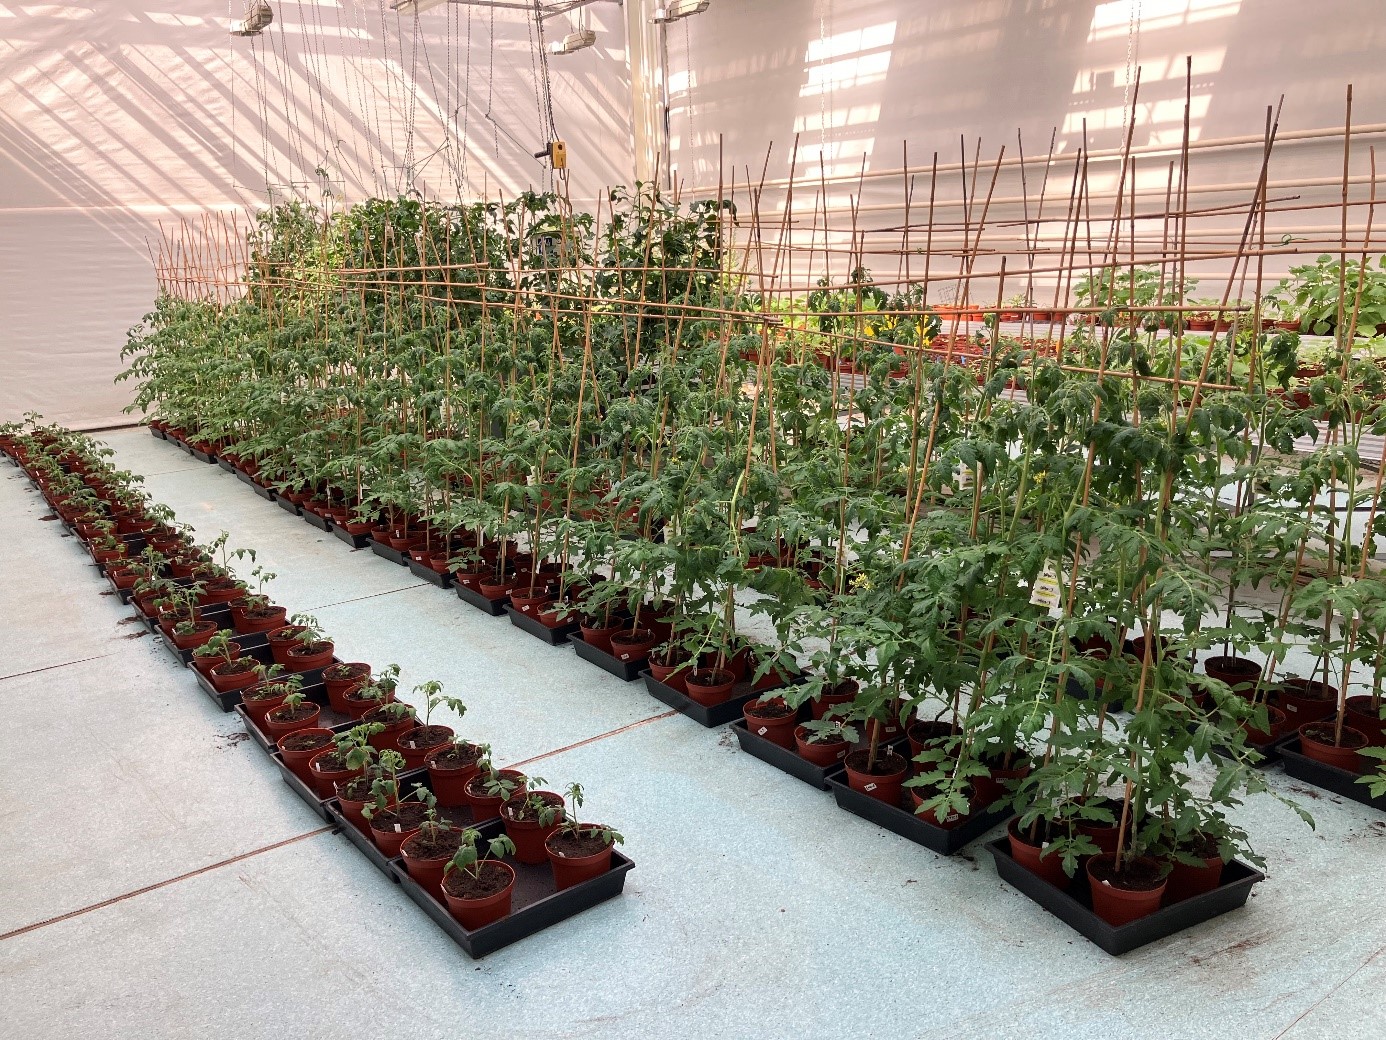 Tomato plants at psb